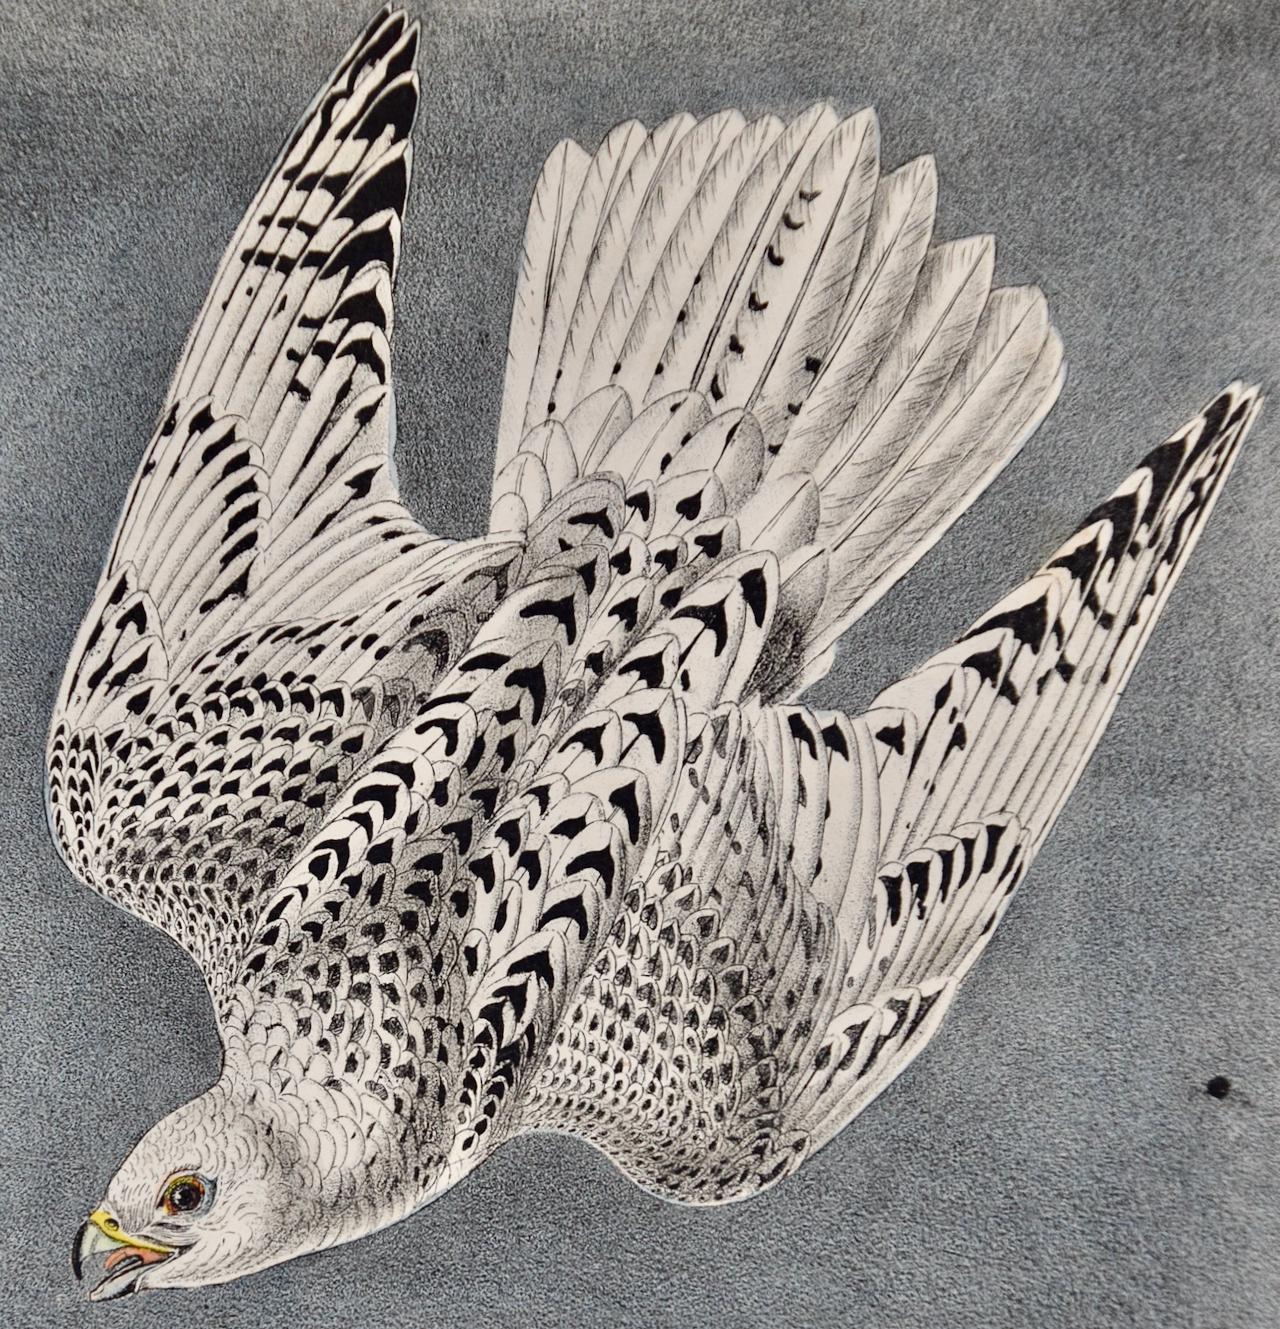 Iceland ou Gyr Falcon: An Original 1st Ed. Lithographie d'oiseaux colorée à la main Audubon  - Naturalisme Print par John James Audubon